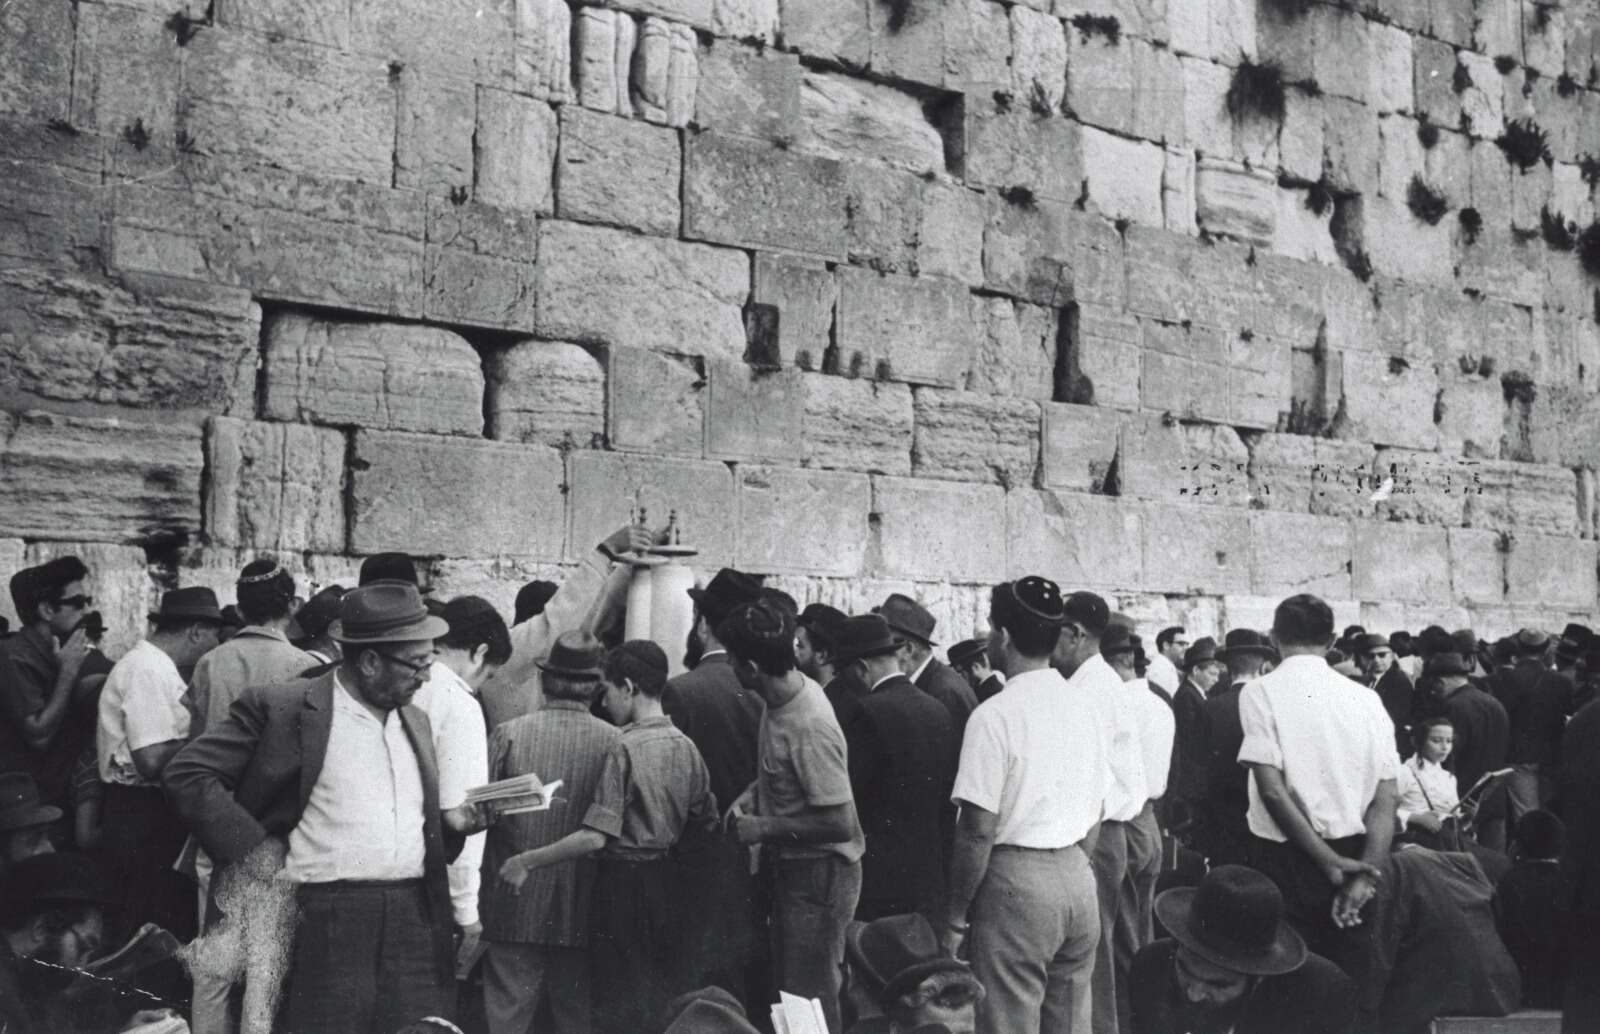 איפה הייתם כש? 20 האירועים הבלתי נשכחים במדינת ישראל | פרויקט מיוחד